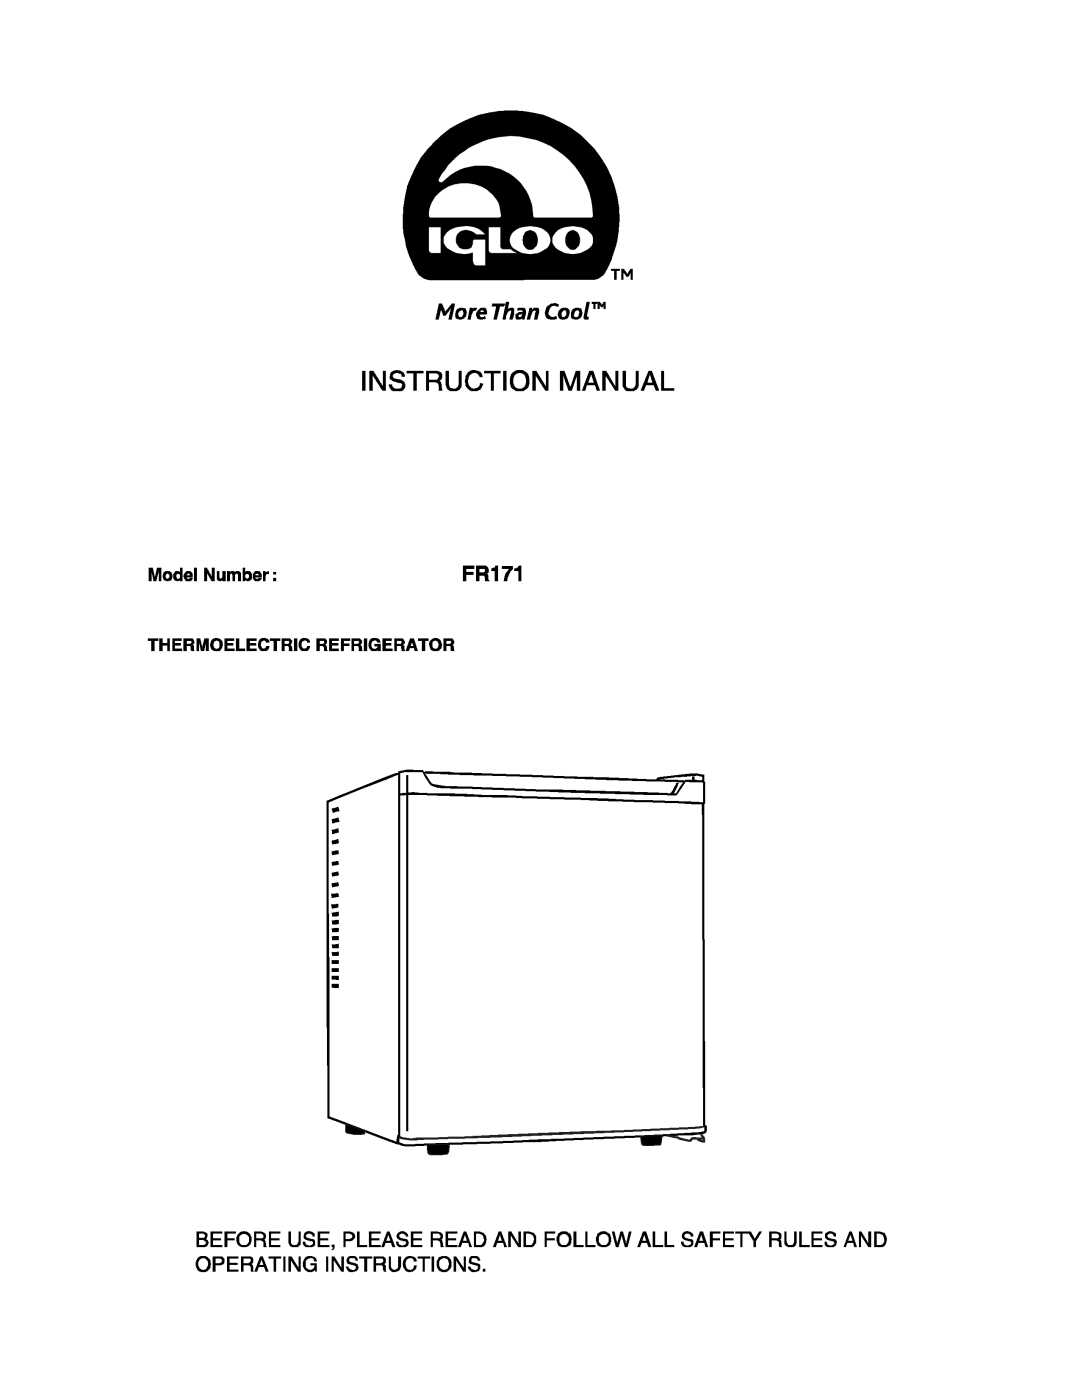 Igloo FR171 manual 